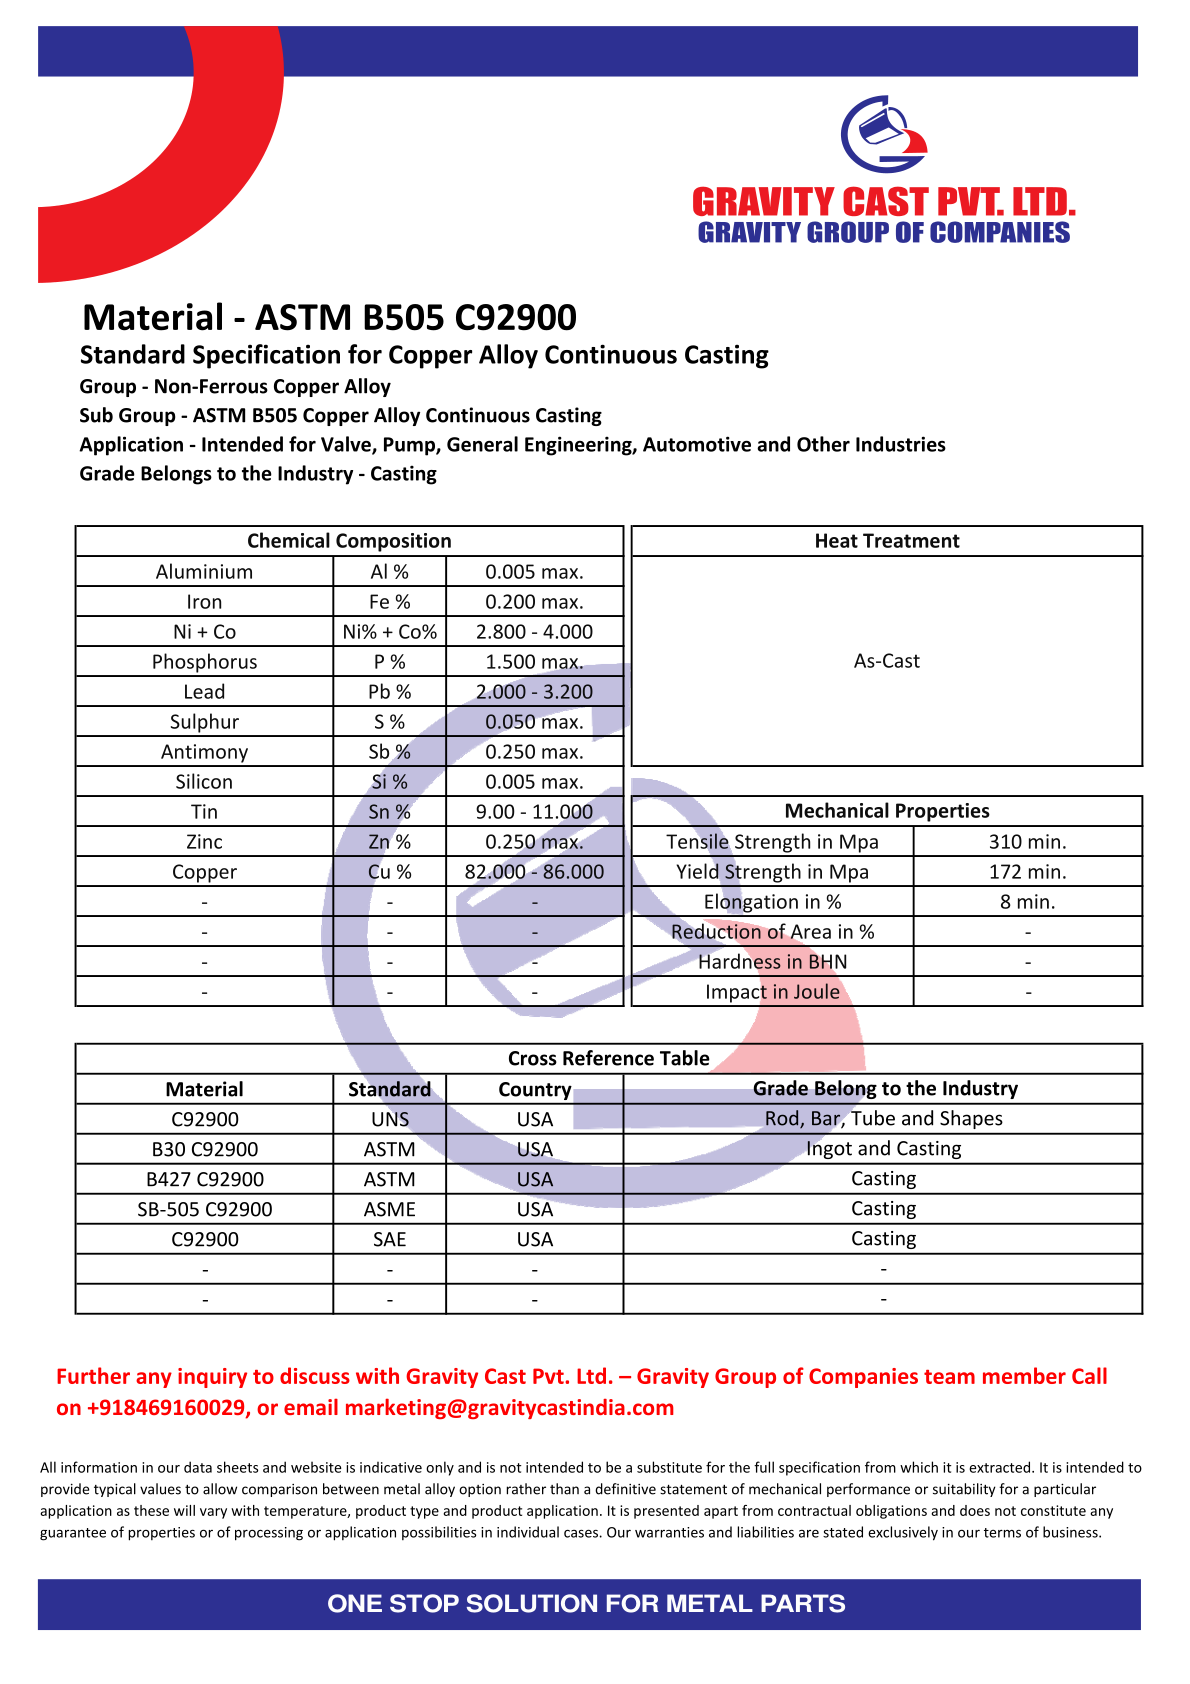 ASTM B505 C92900.pdf